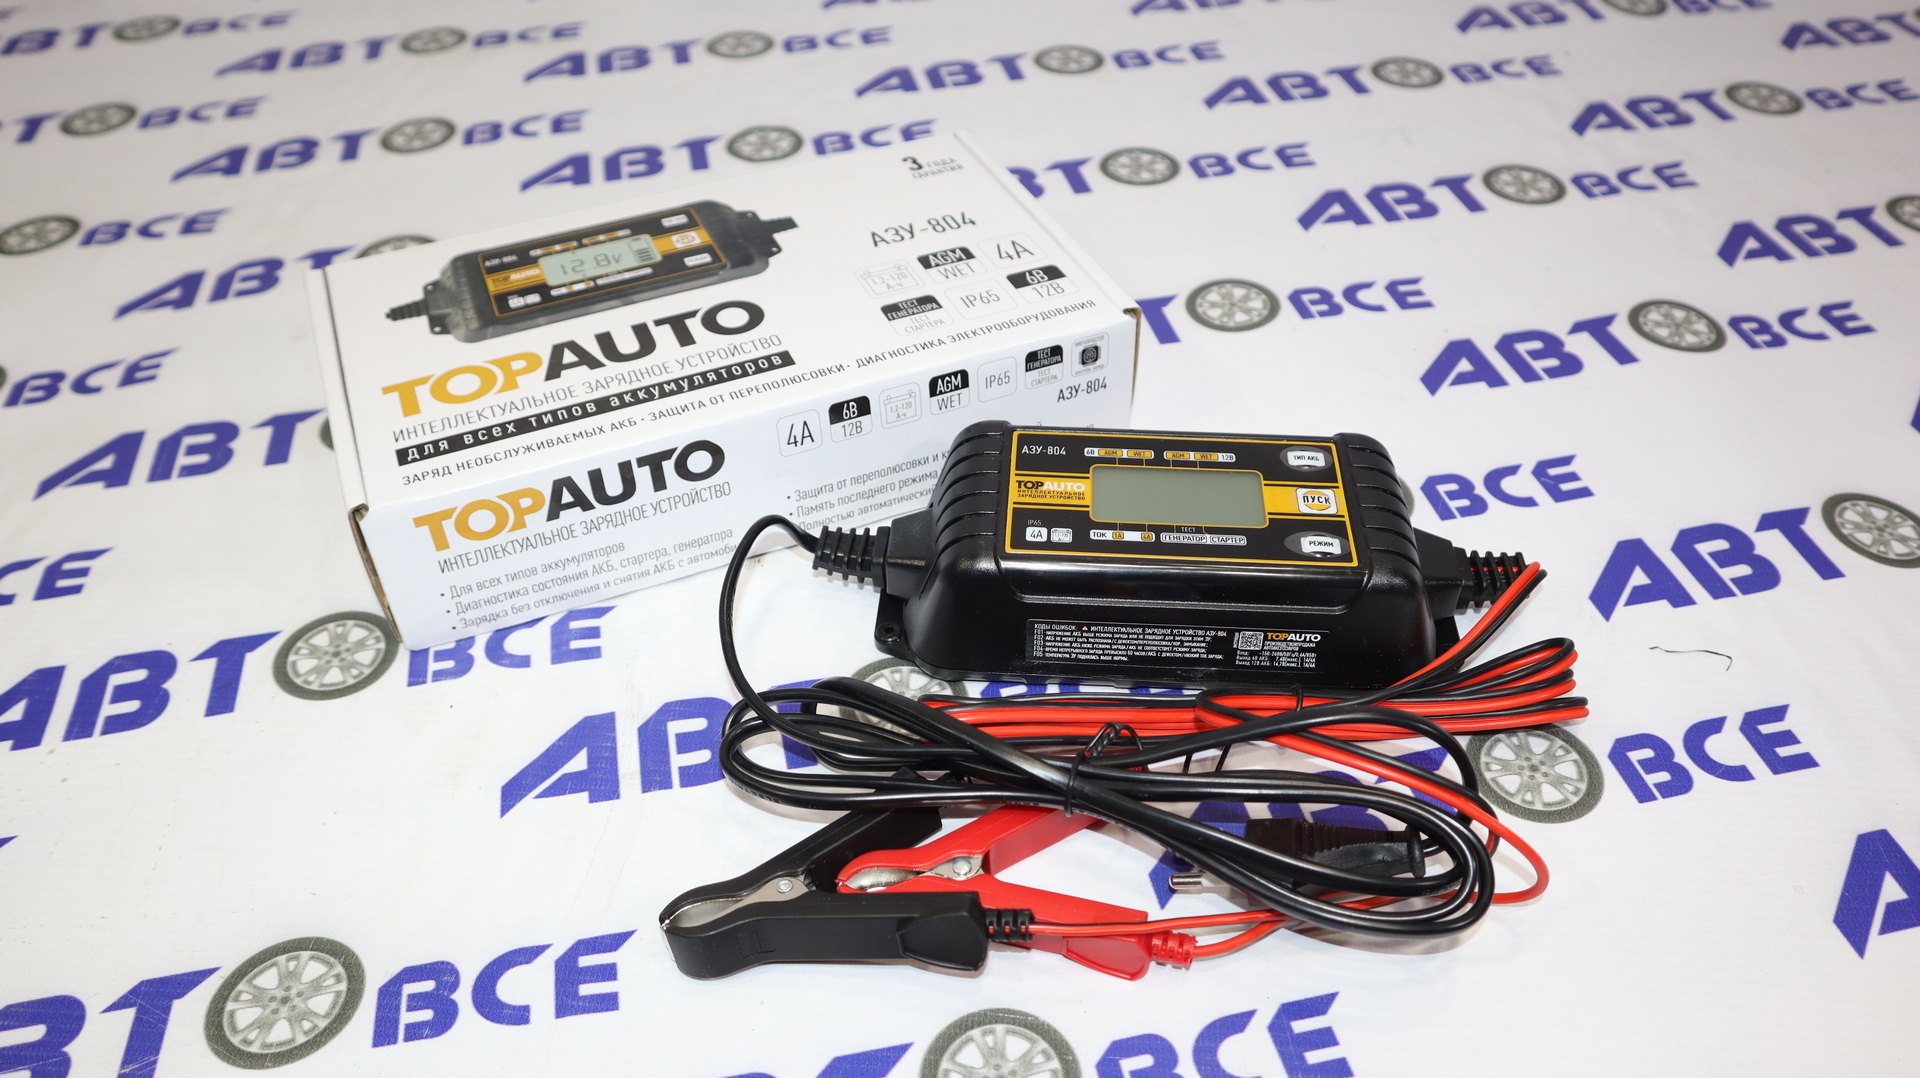 Зарядное устройство для АКБ 12V 6A (c защитой и диагностикой) малое АЗУ-804 ТопАвто